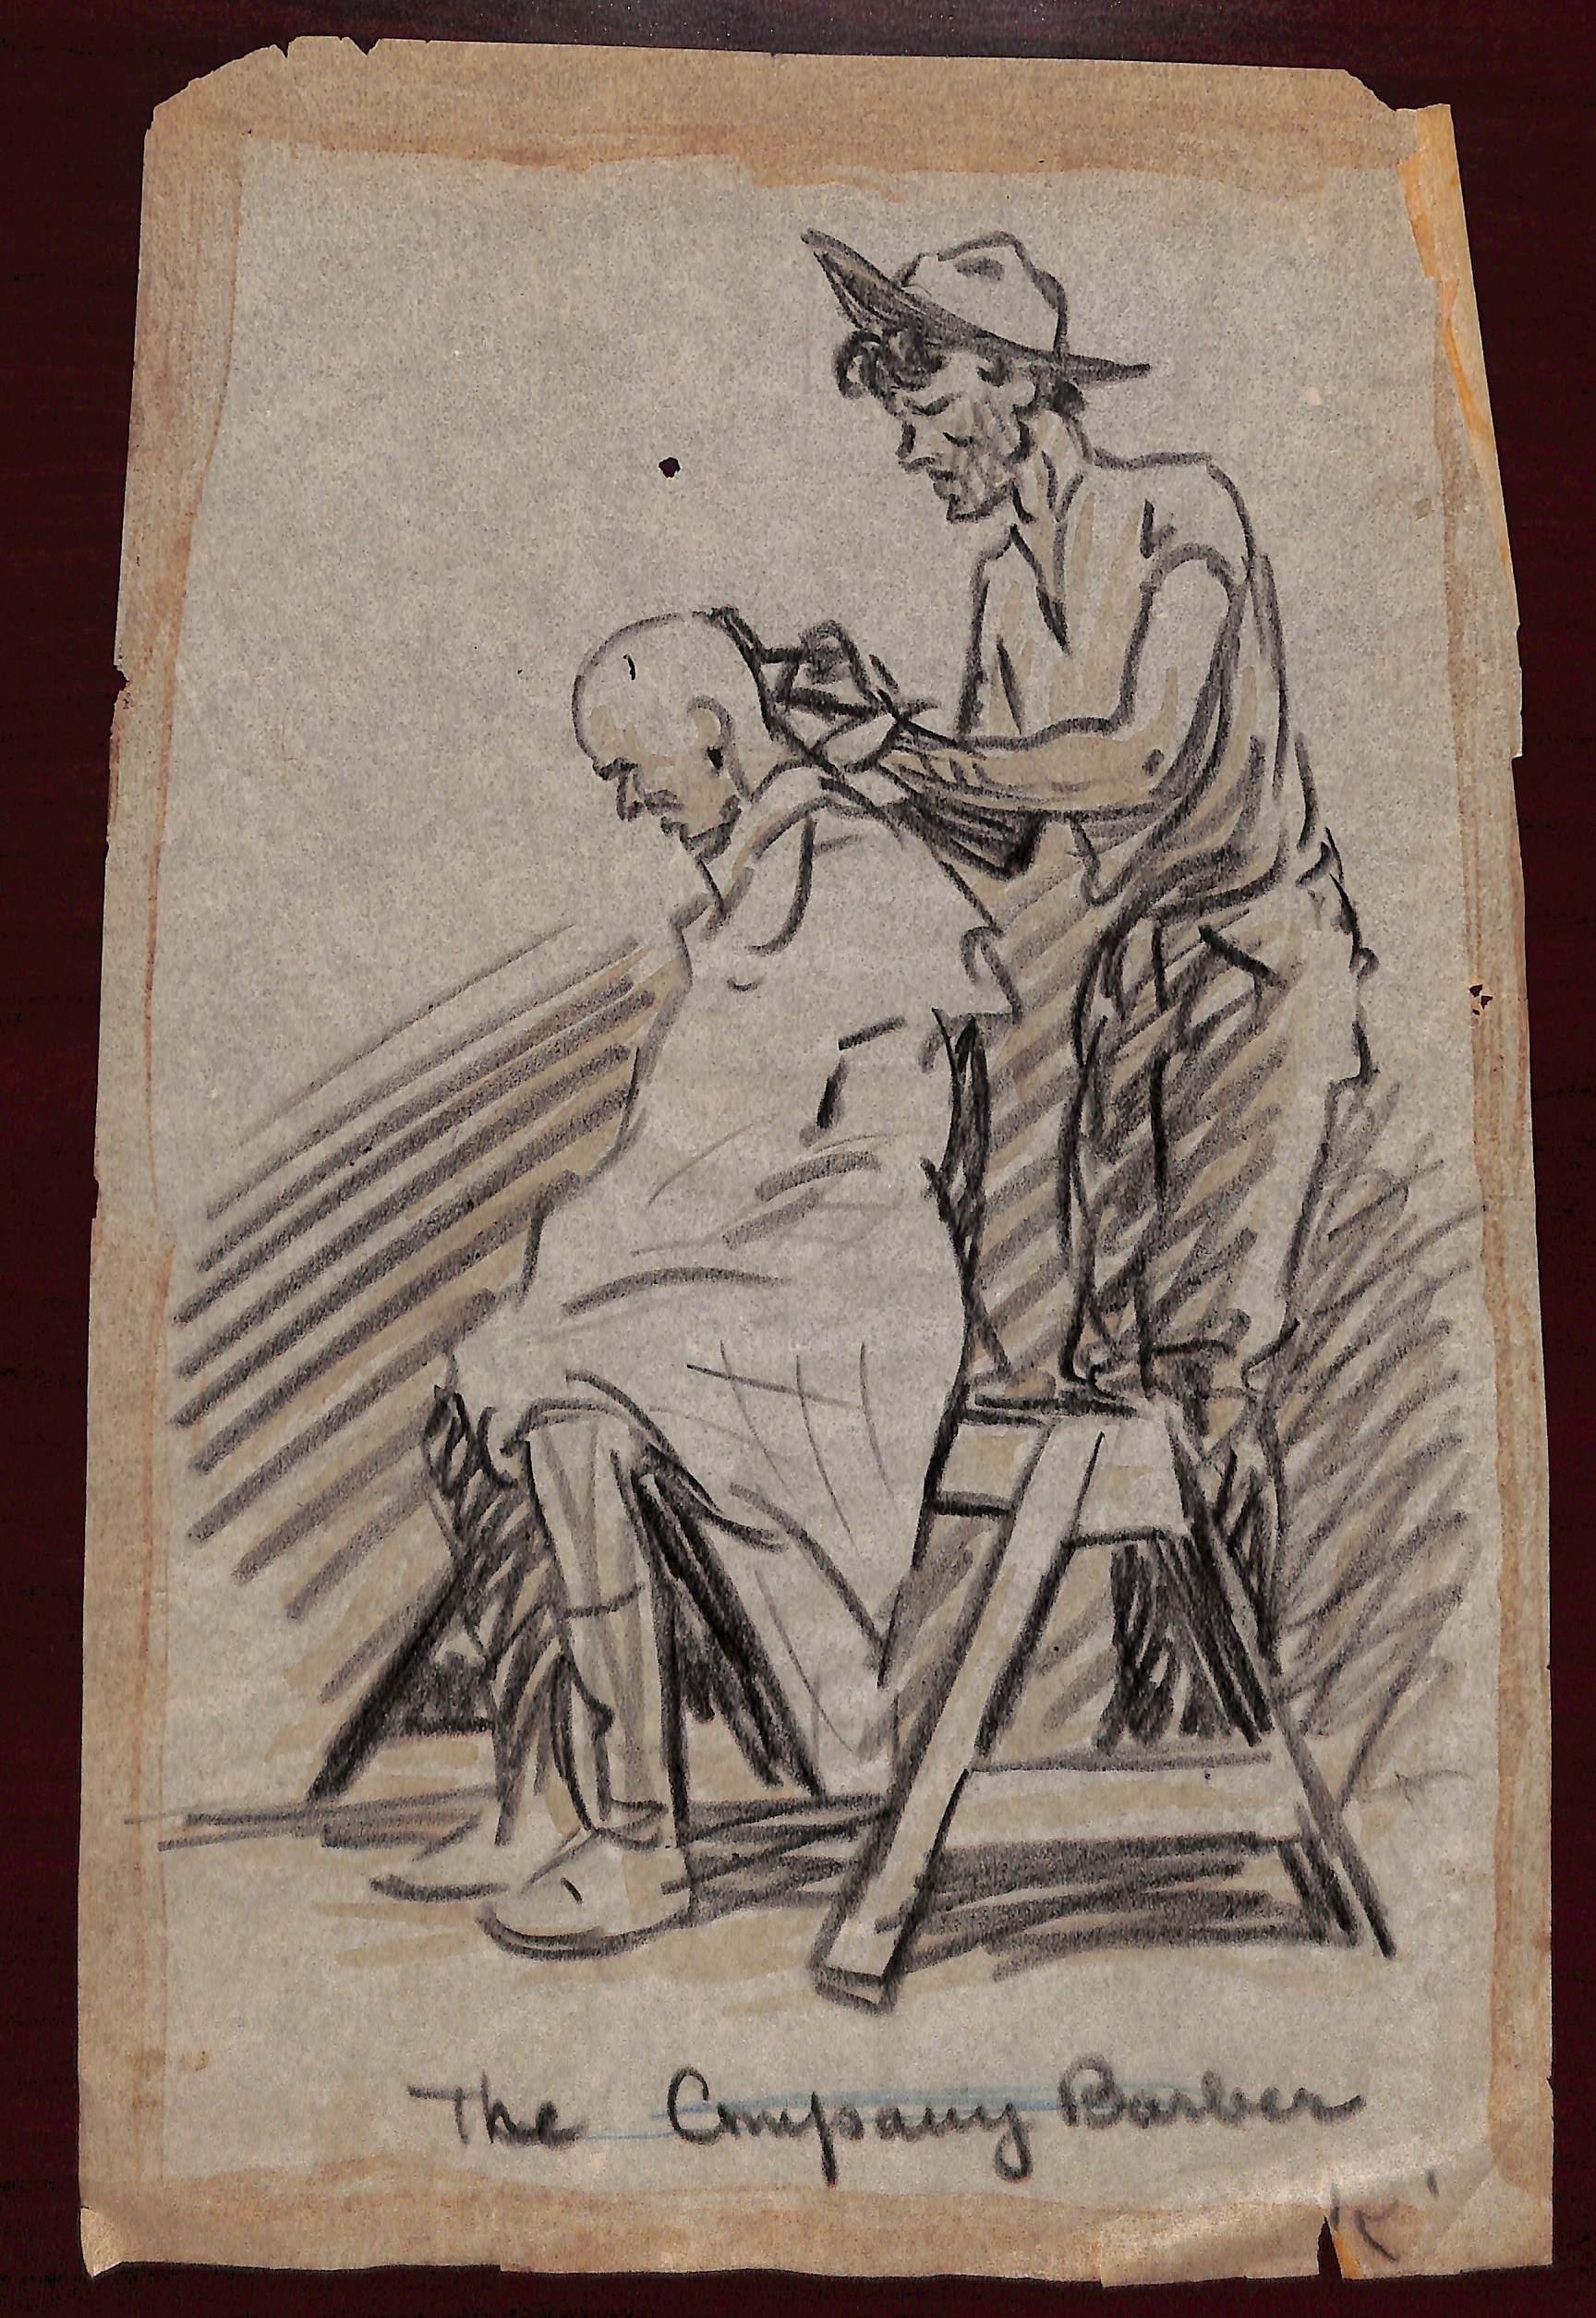 Paul Brown The Company Barber Bleistiftzeichnung – Art von Paul Desmond Brown